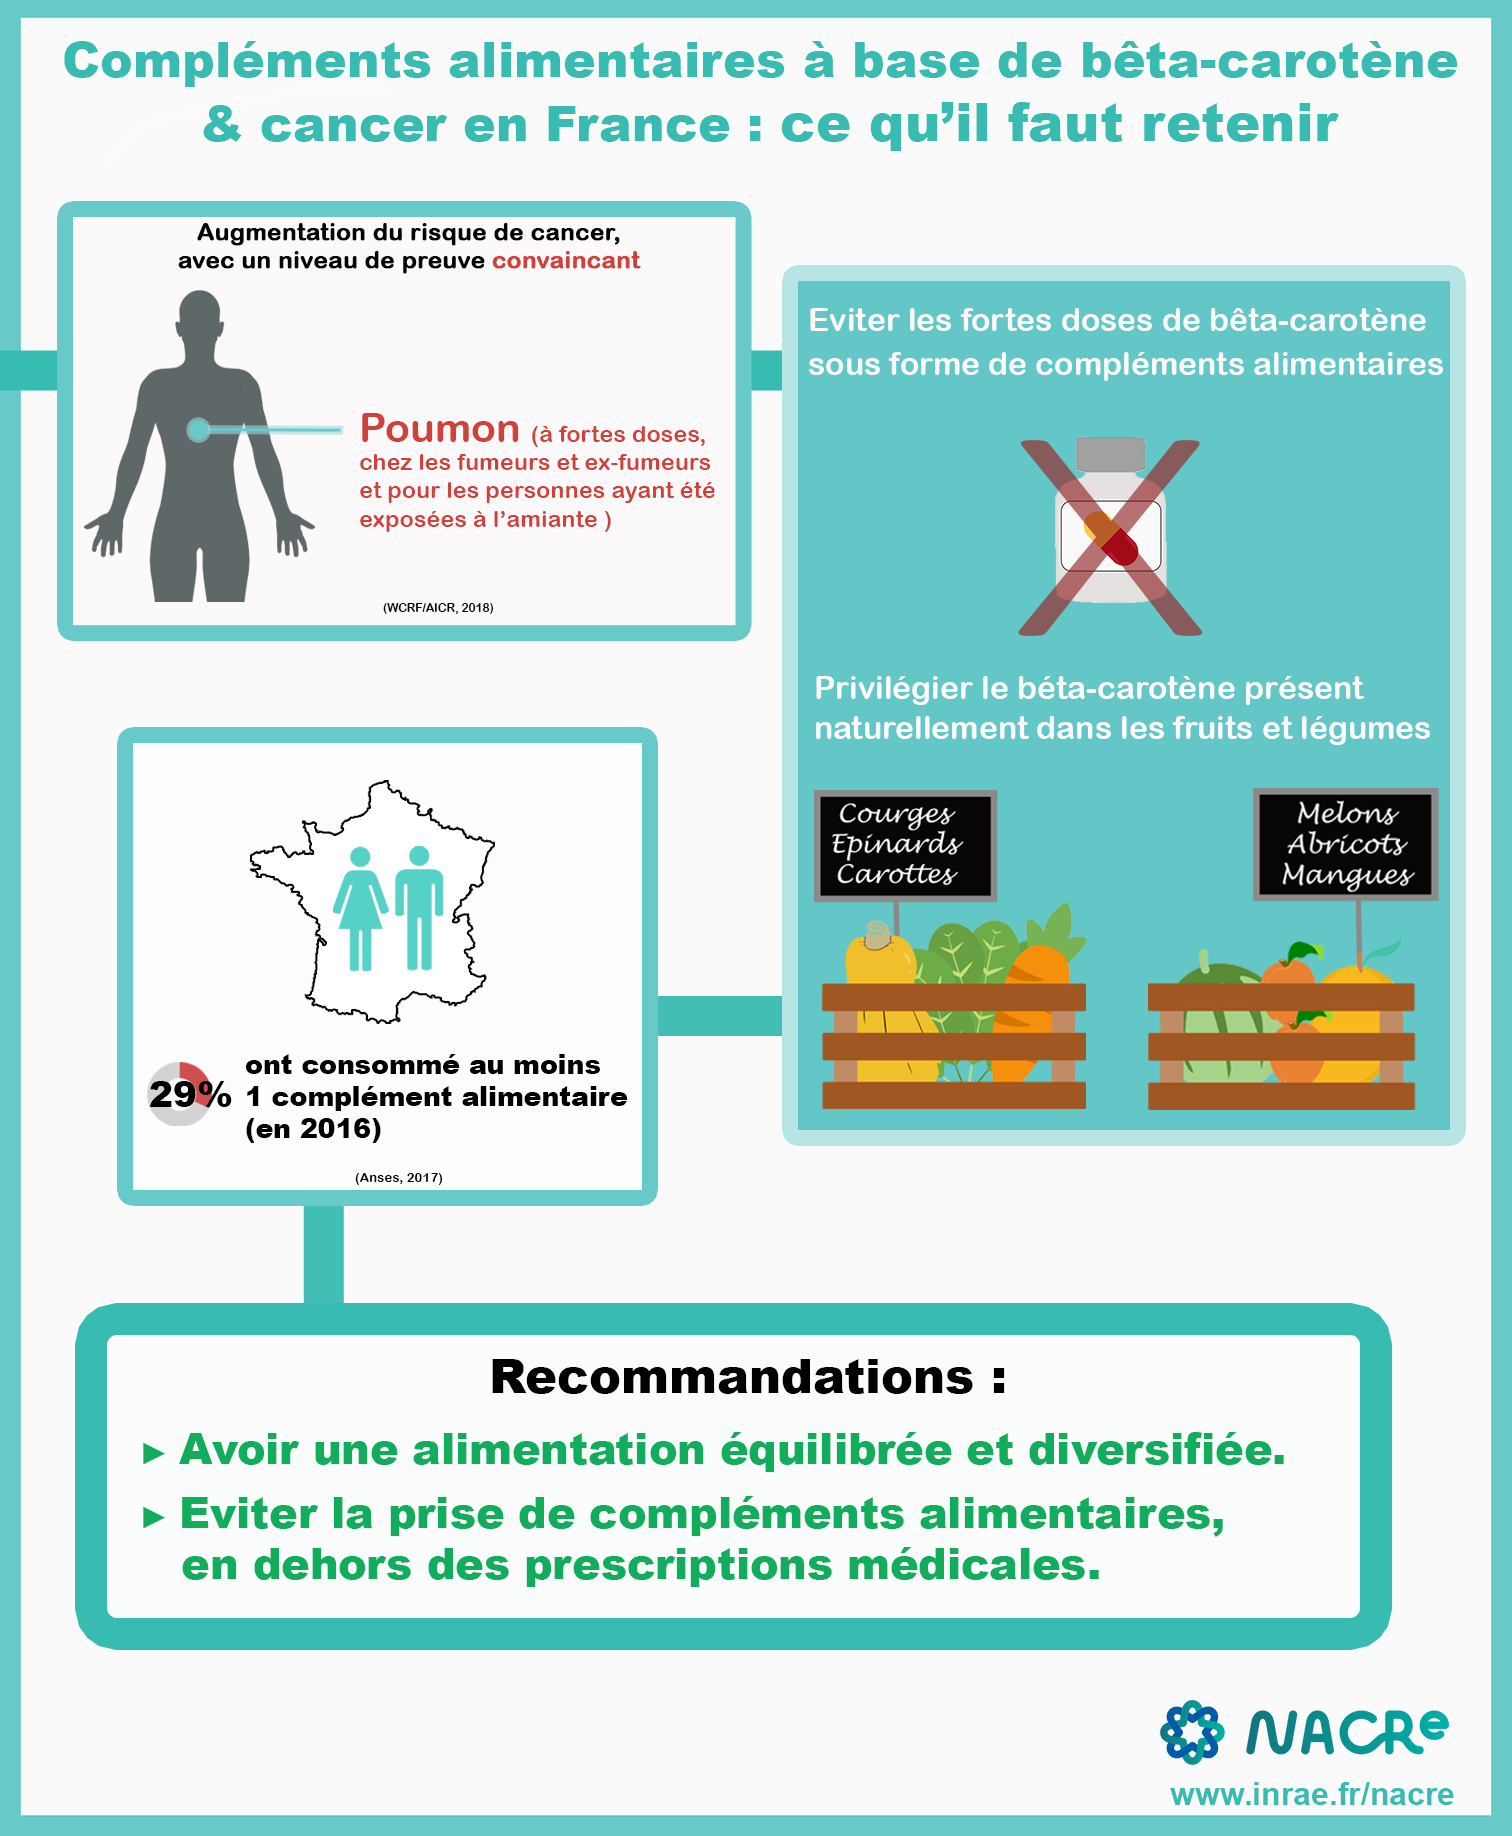 Infographie Compléments alimentaires bêta carotène et risque de cancer France 2020